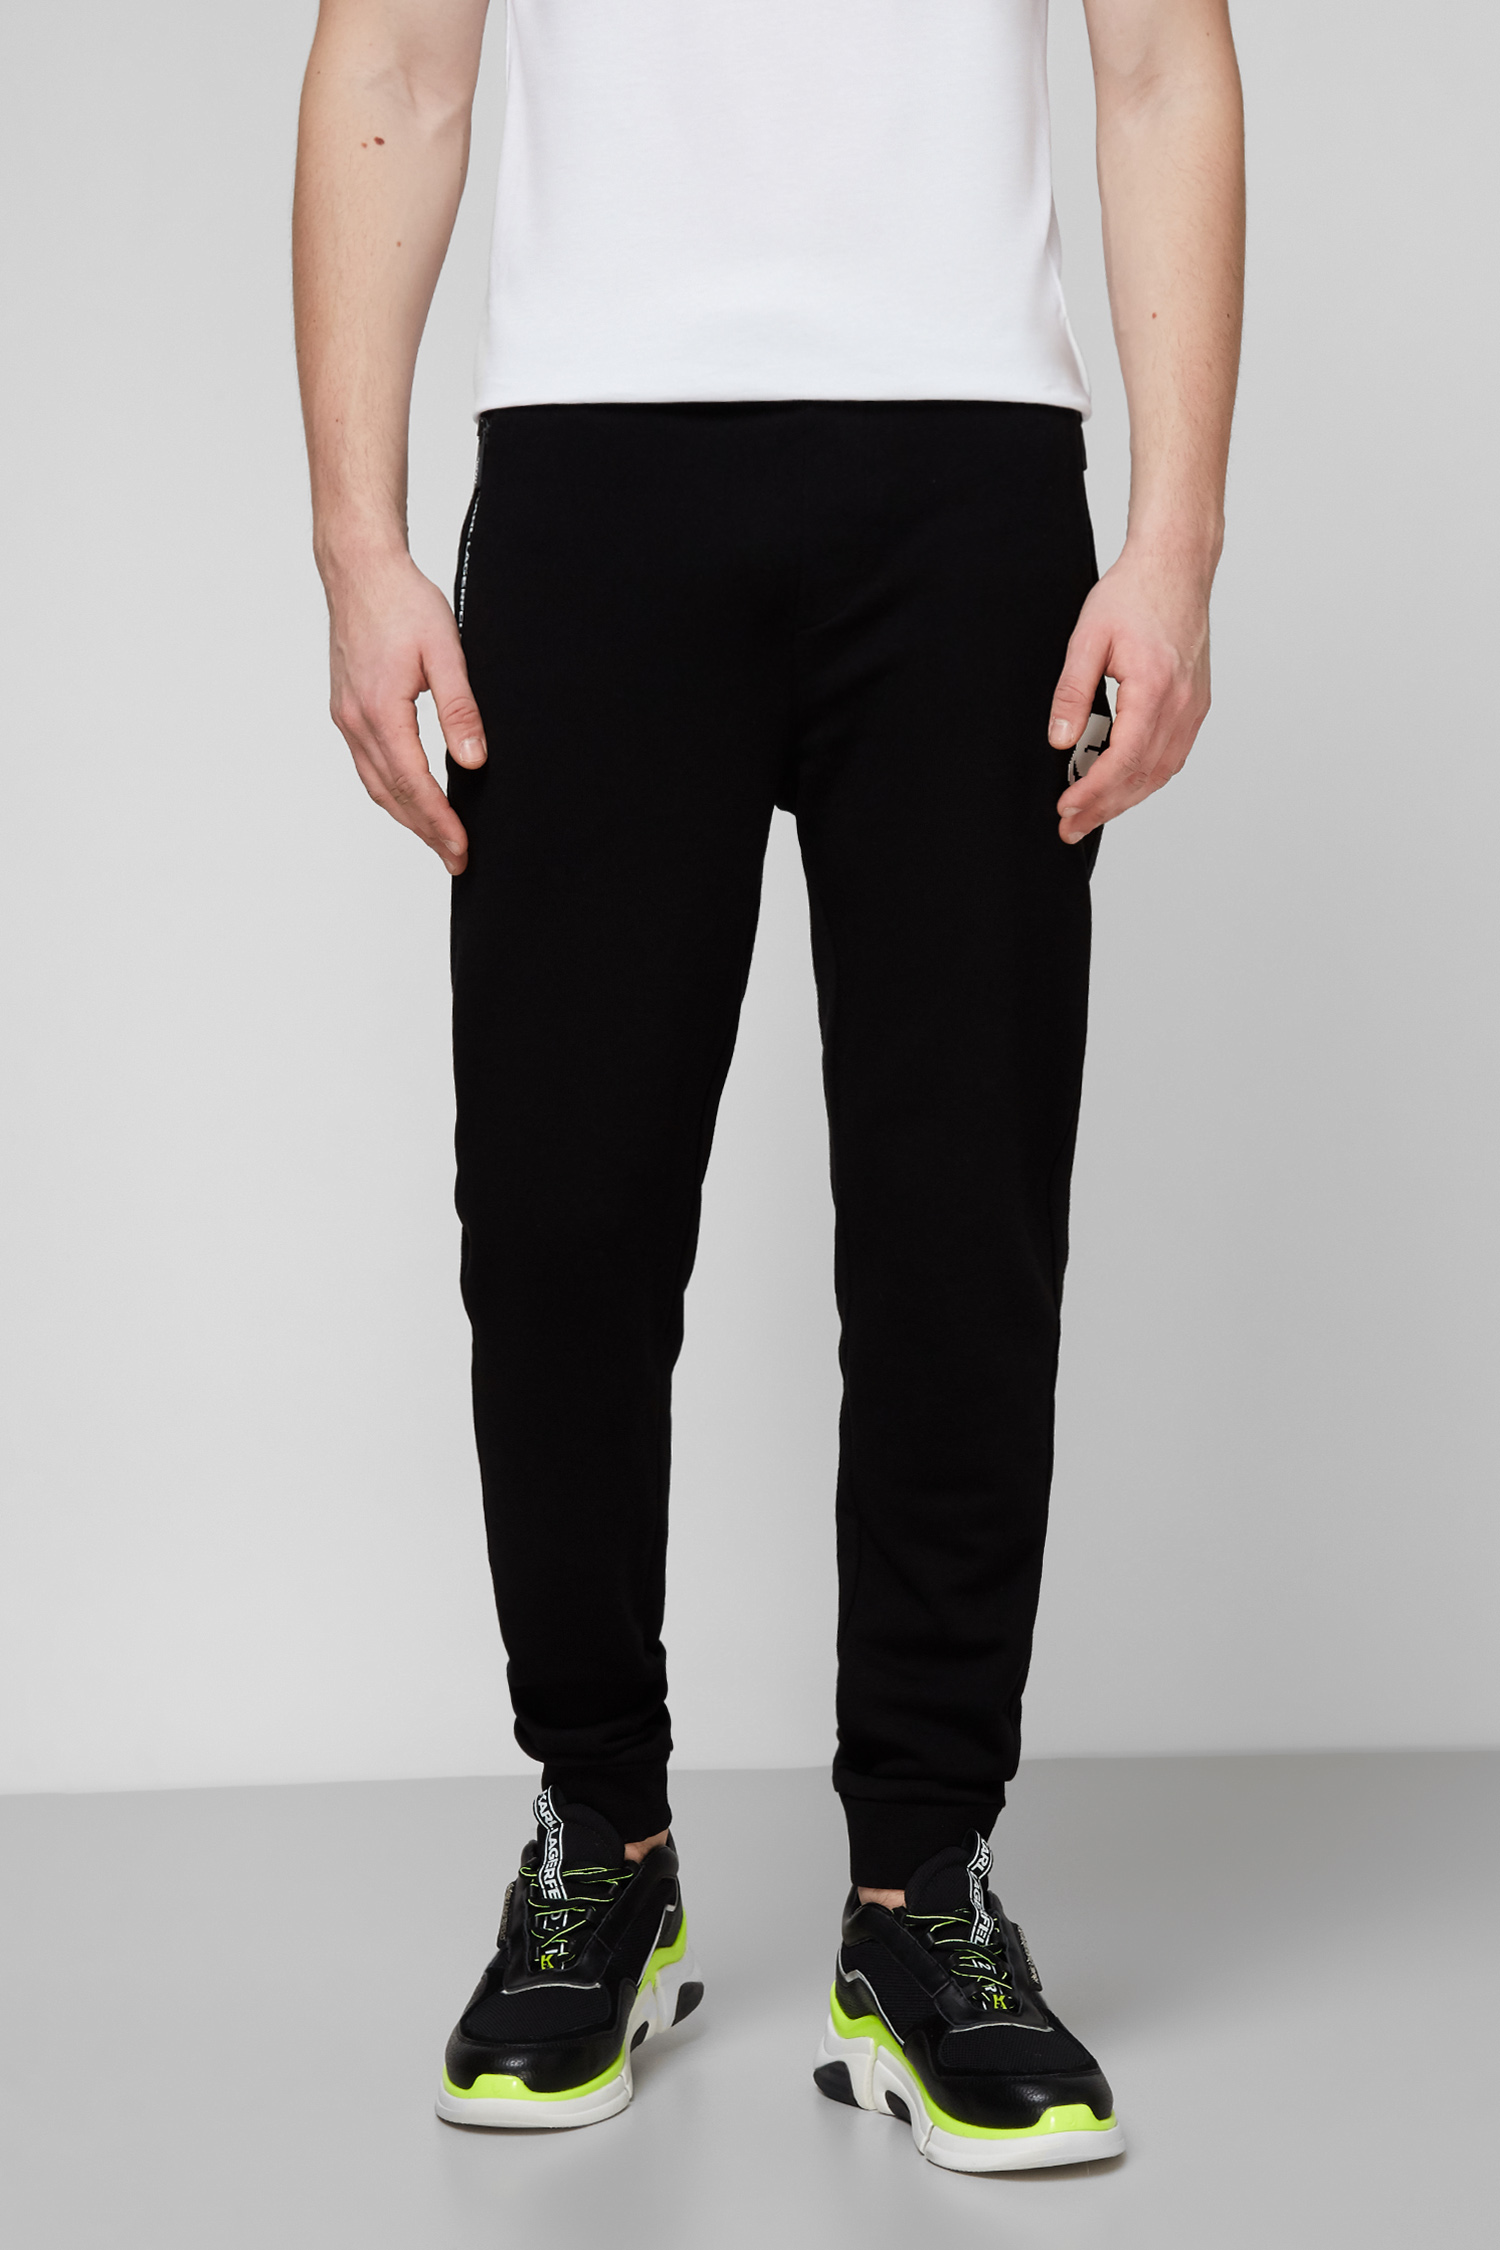 Чорні спортивні штани для хлопців Karl Lagerfeld 511900.705005;990